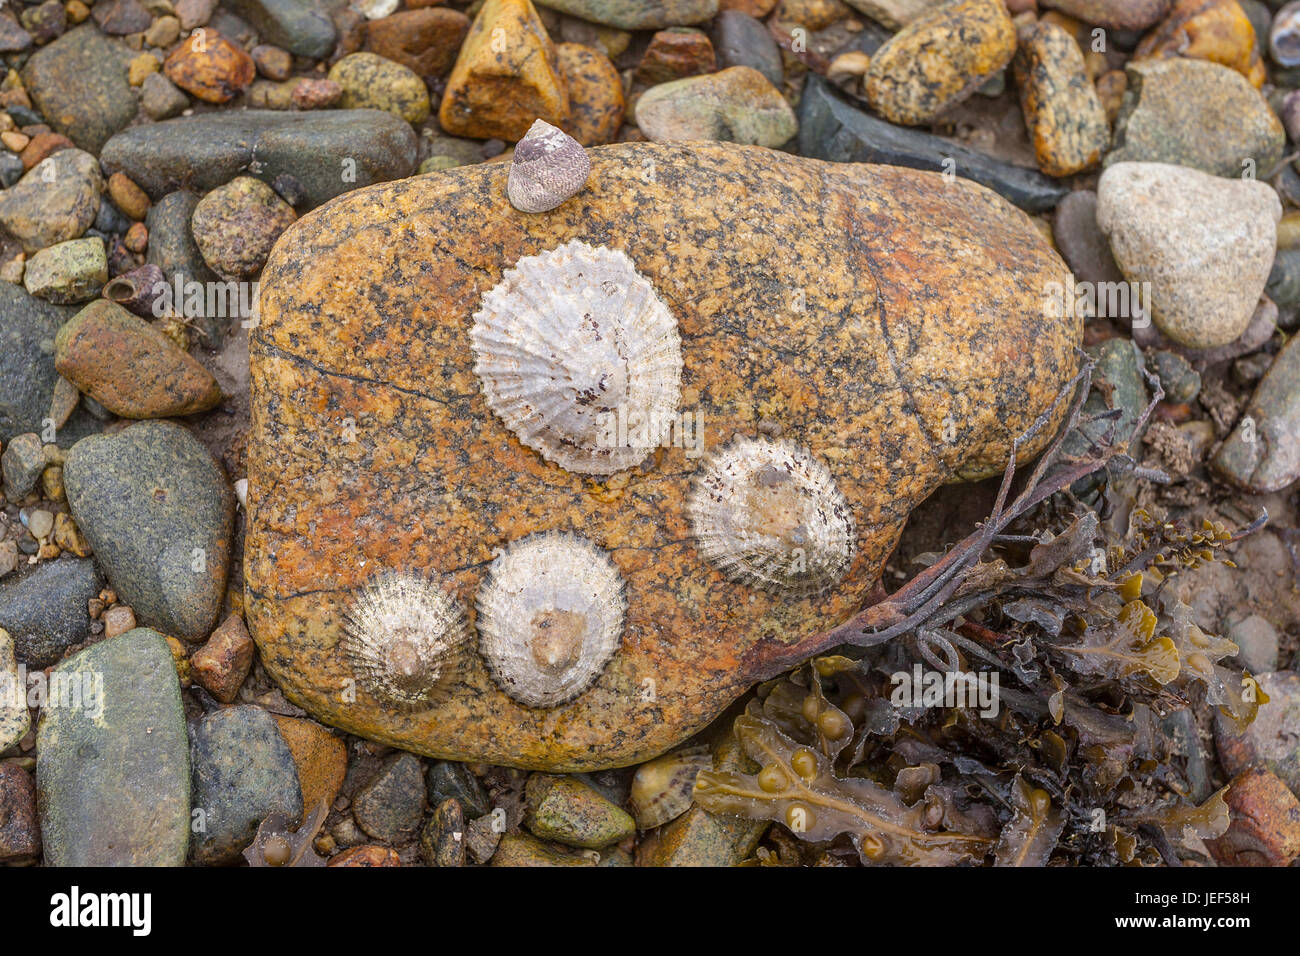 Limpet común europeo común, limpet (Patella vulgata) sobre roca (Patellidae), Bretaña, Francia Foto de stock